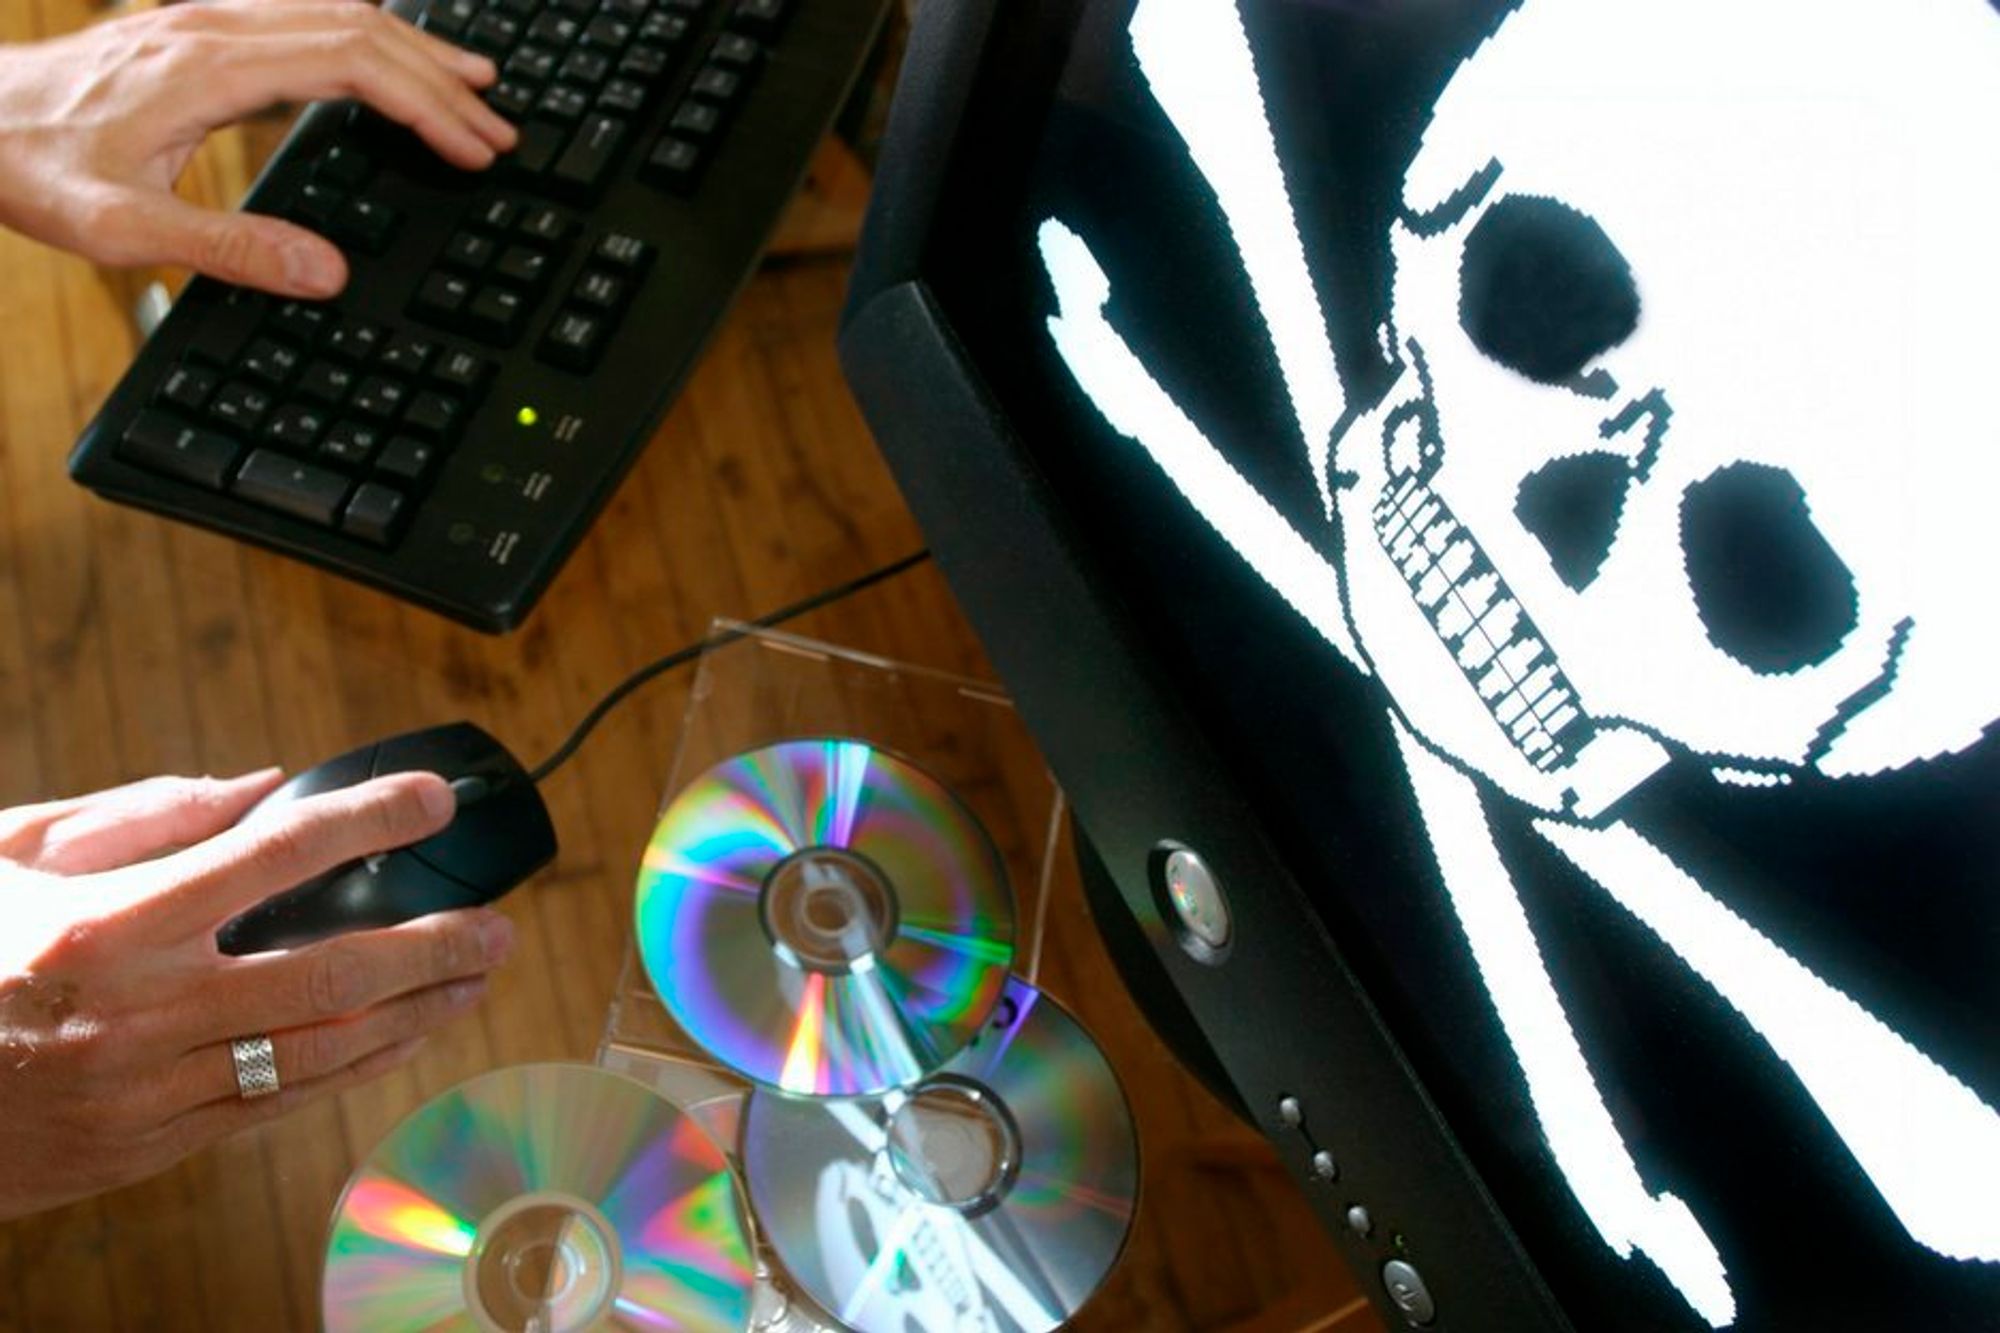 Politiet, FBI og Microsoft har avslørt en enorm kinesisk piratkopieringsring. 290 000 CD-er med software ble funnet i aksjonen.